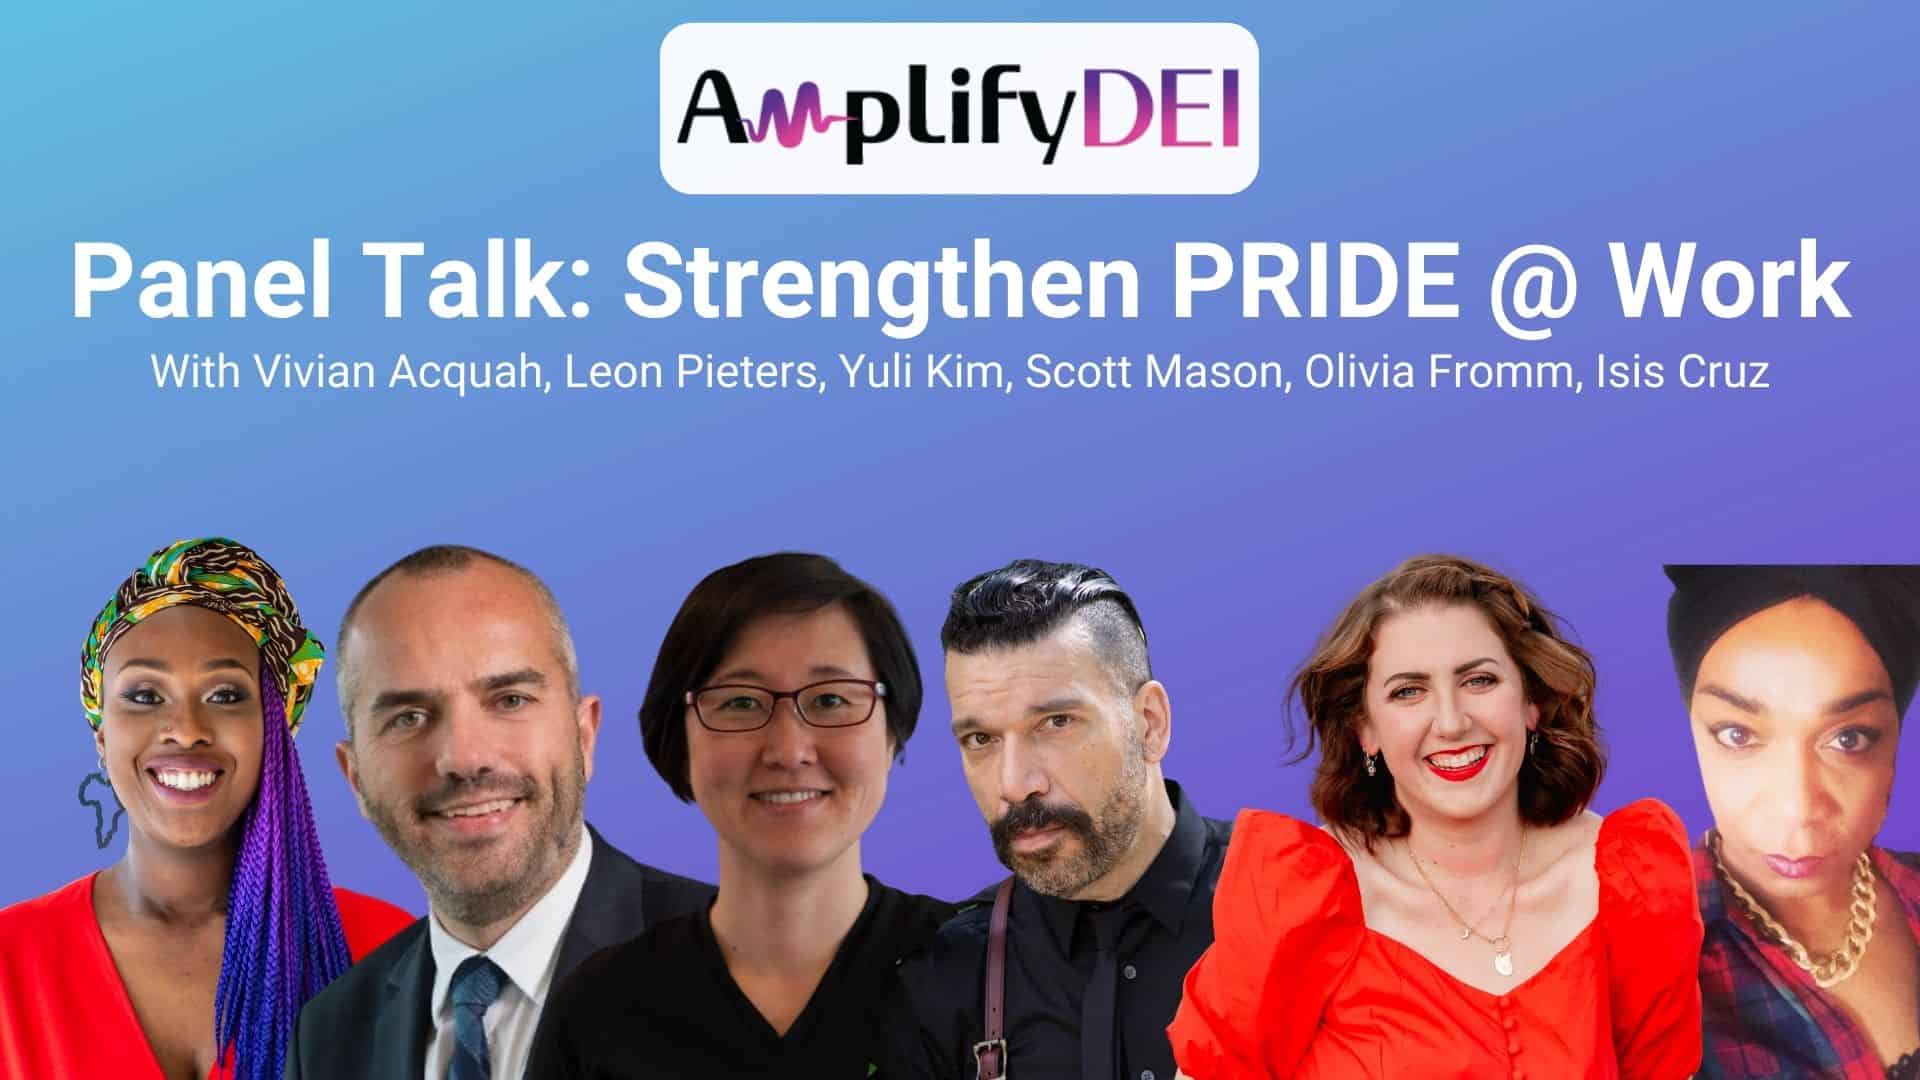 Strengthen Pride @ Work Viva la Vive Amplify DEI